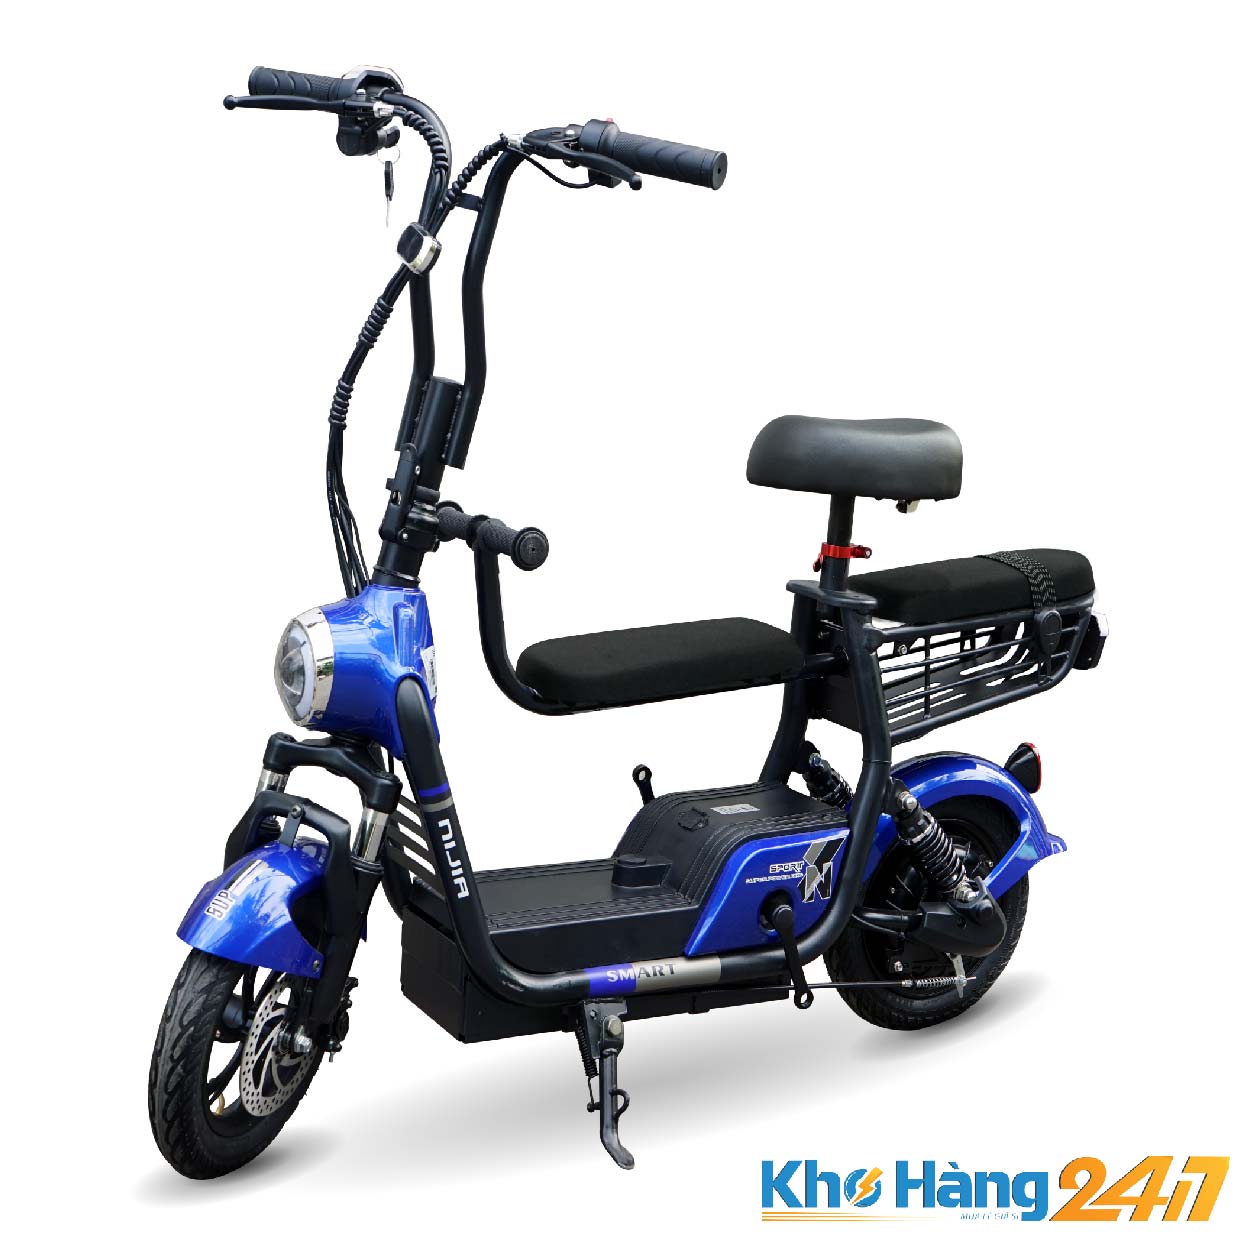 xe dap dien nijia smart 3 yen khohang247 01 - Xe đạp điện NIJIA SMART 3 yên